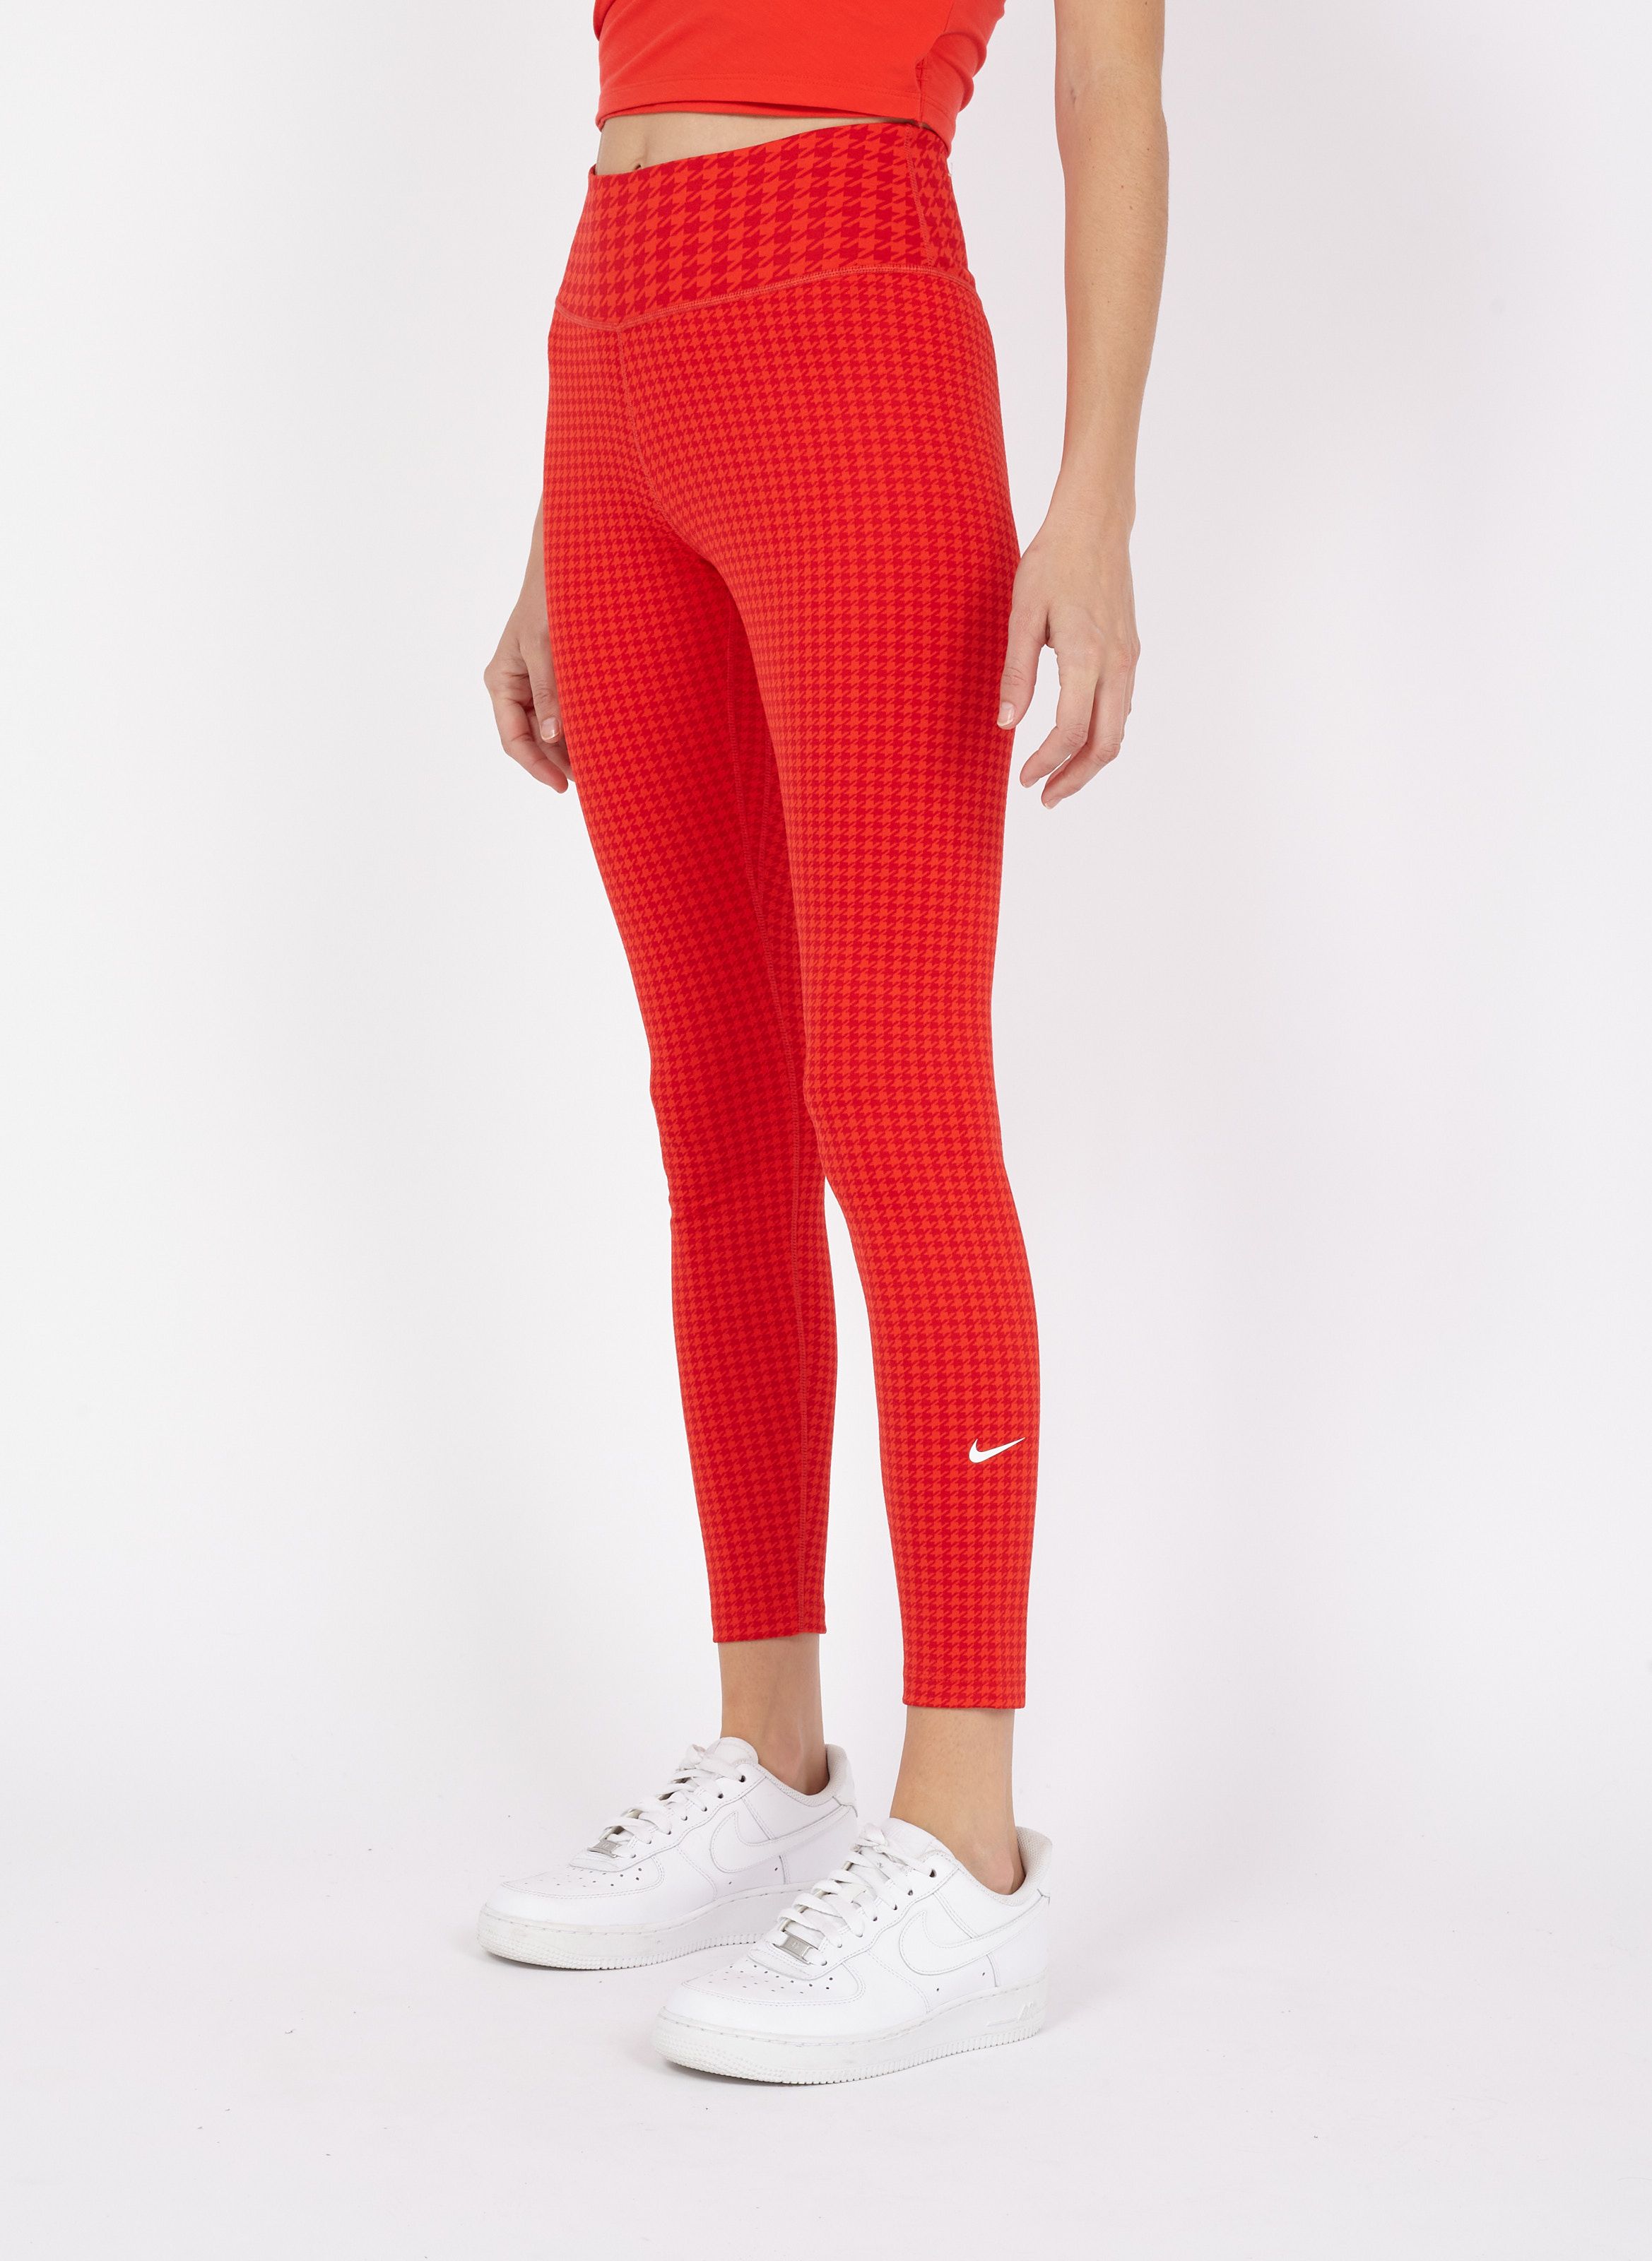 Soldes Legging De Sport Imprimé Chile Red/university Red/white Nike - Femme  | Place des Tendances